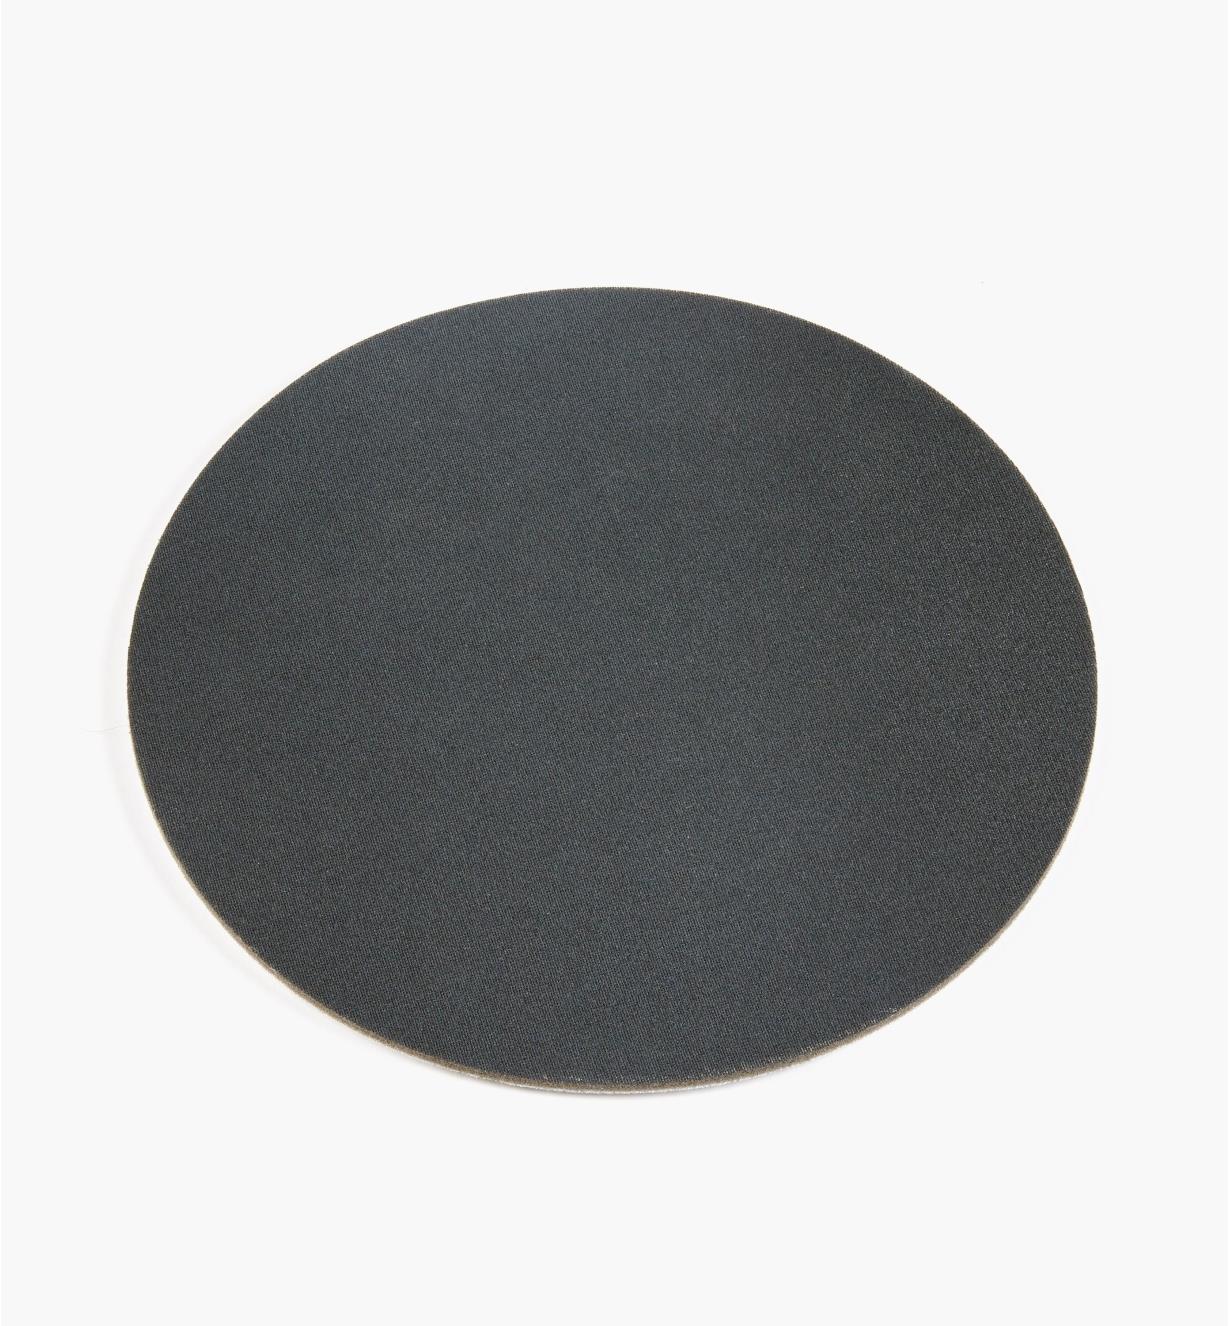 08K2881 - 360x 9" Abralon Foam Grip Disc, ea.